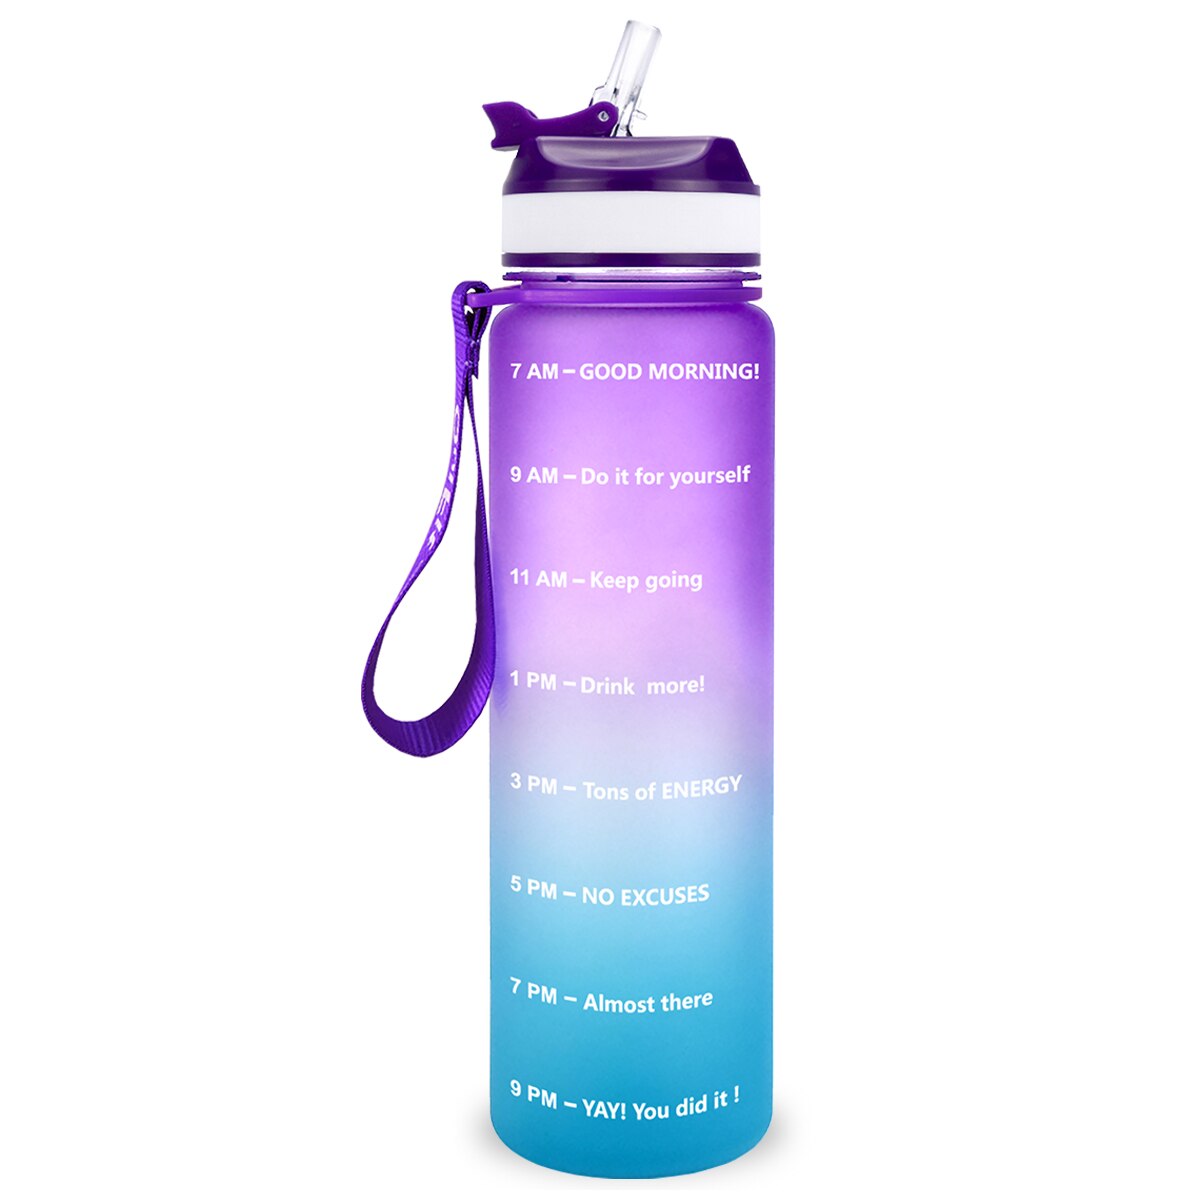 Eine violett-blaue Sporttrinkflasche mit einer Zeitmarkierungen sowie motivierenden Spruechen für verschiedene Tageszeiten. Die Flasche hat eine violette Trageschlaufe und einen Deckel mit einem aufklappbaren Trinkverschluss.